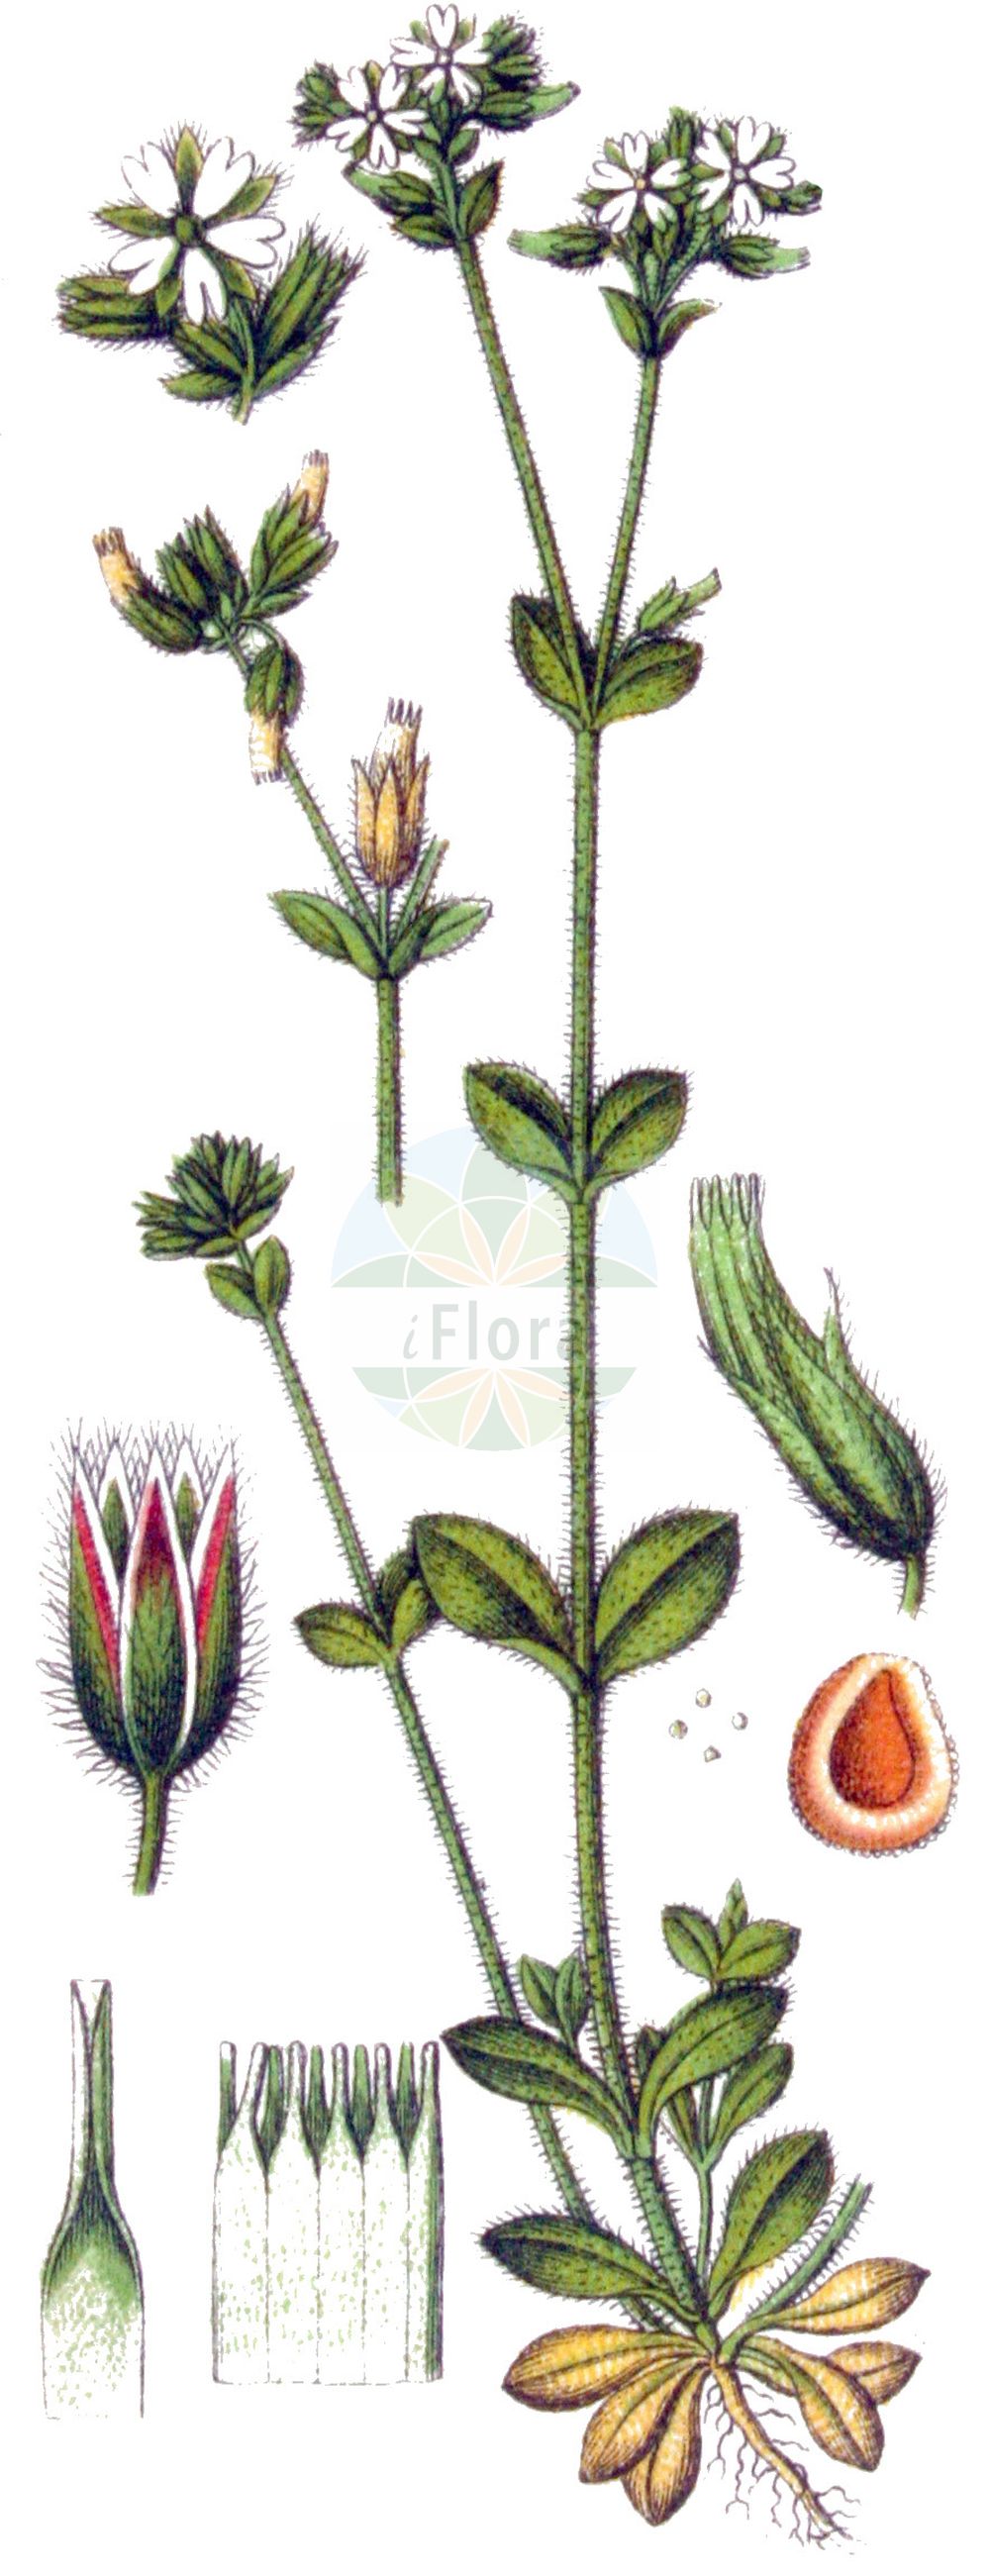 Historische Abbildung von Cerastium glomeratum (Knäuel-Hornkraut - Sticky Mouse-ear). Das Bild zeigt Blatt, Bluete, Frucht und Same. ---- Historical Drawing of Cerastium glomeratum (Knäuel-Hornkraut - Sticky Mouse-ear). The image is showing leaf, flower, fruit and seed.(Cerastium glomeratum,Knäuel-Hornkraut,Sticky Mouse-ear,Cerastium apetalum,Cerastium glomeratum,Cerastium viscosioides,Cerastium vulgatum,Knaeuel-Hornkraut,Sticky Mouse-ear,Mouse-ear Chickweed,Sticky Chickweed,Sticky Mouse-ear Chickweed,Cerastium,Hornkraut,Chickweed,Caryophyllaceae,Nelkengewächse,Pink family,Blatt,Bluete,Frucht,Same,leaf,flower,fruit,seed,Sturm (1796f))